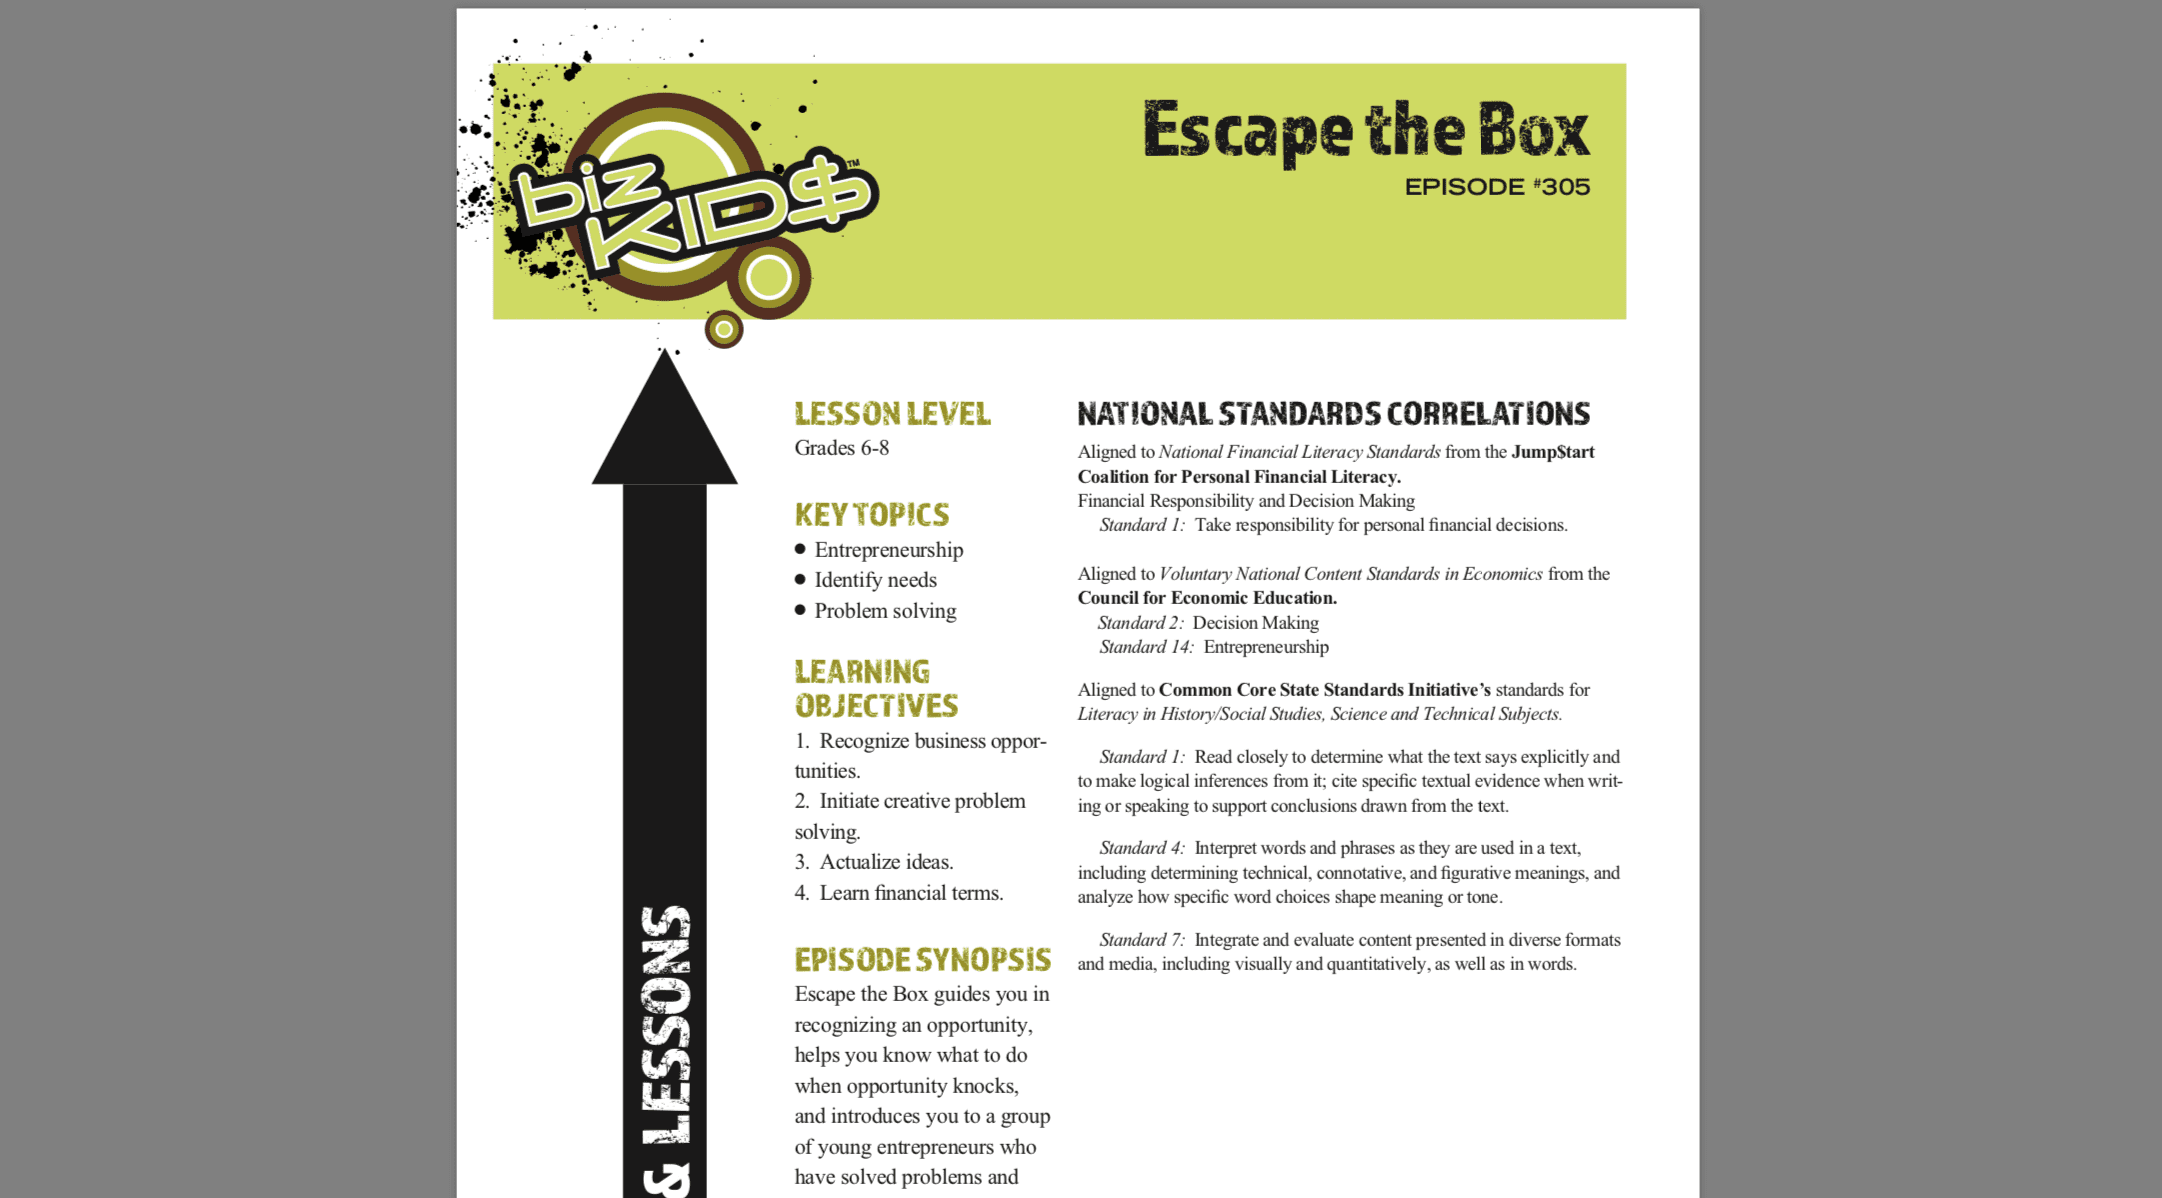 Escape the box flyer.